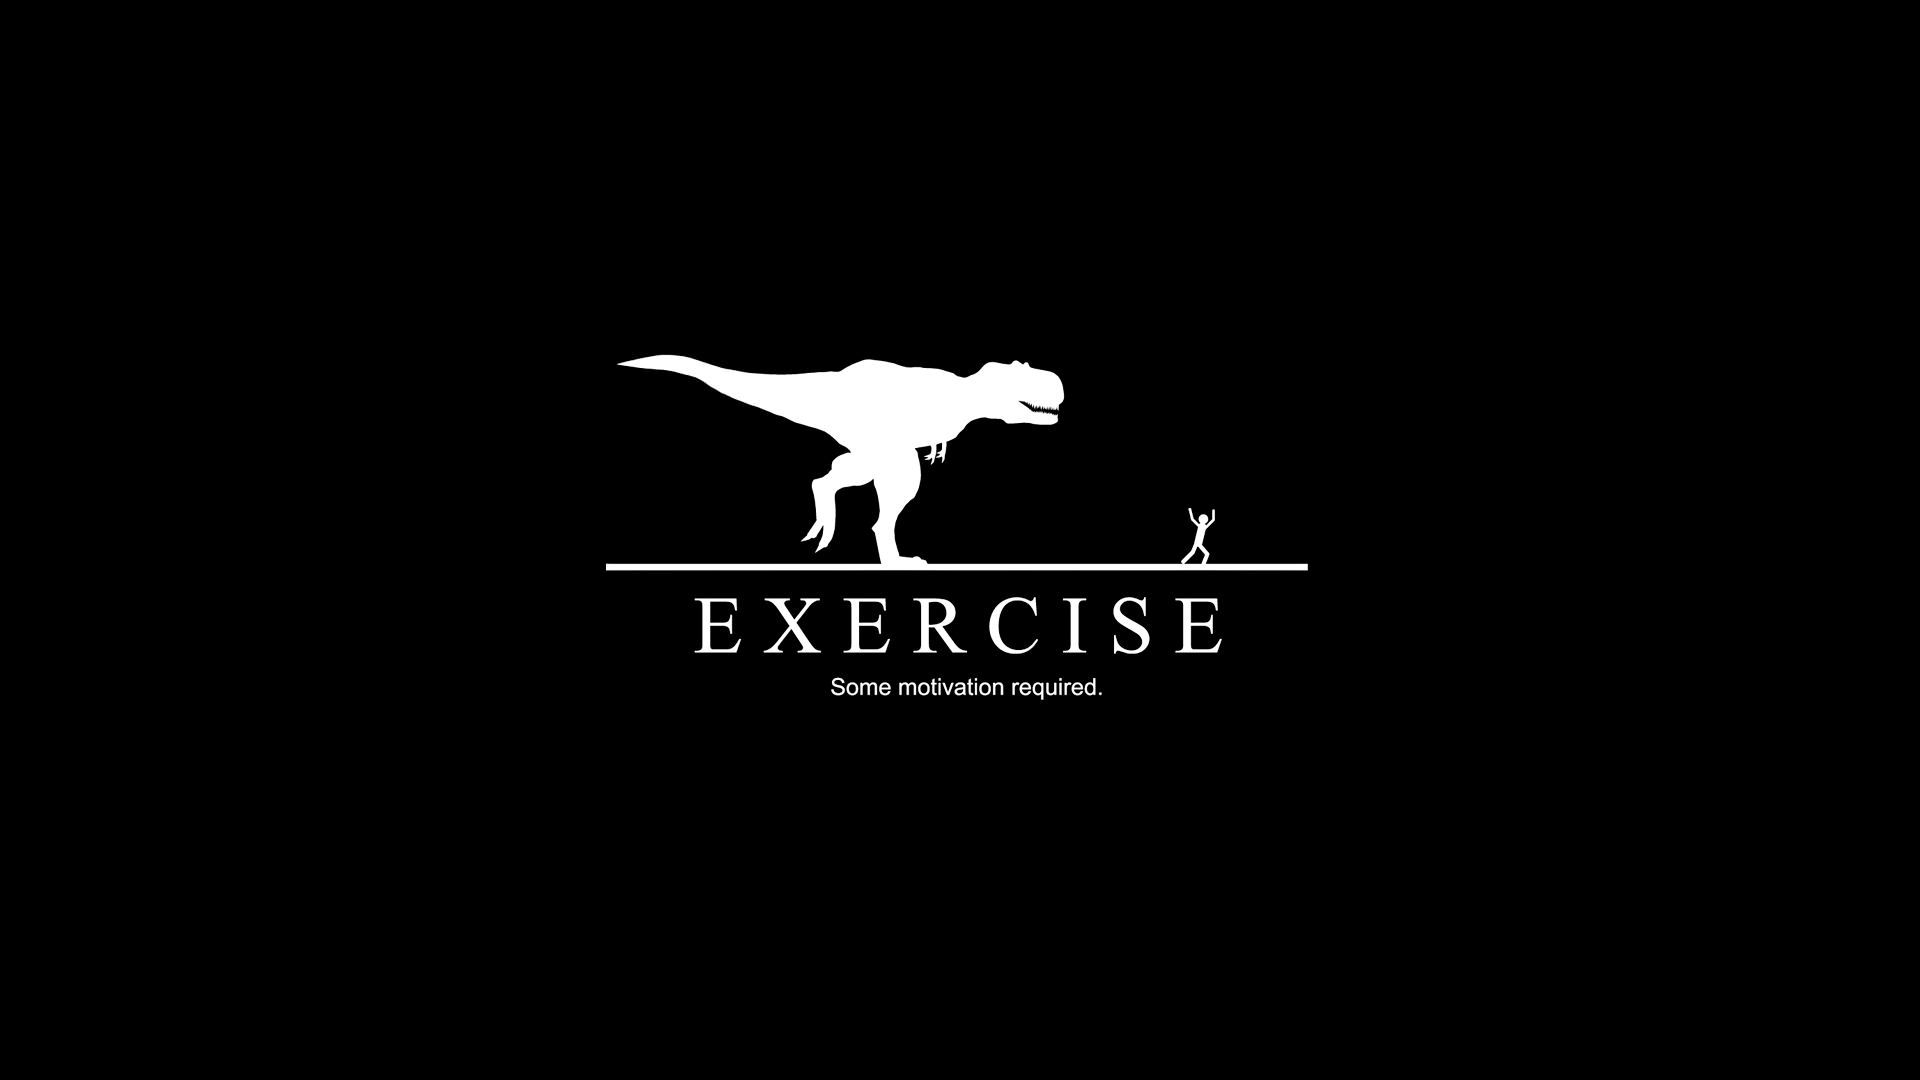 Exercise motivation